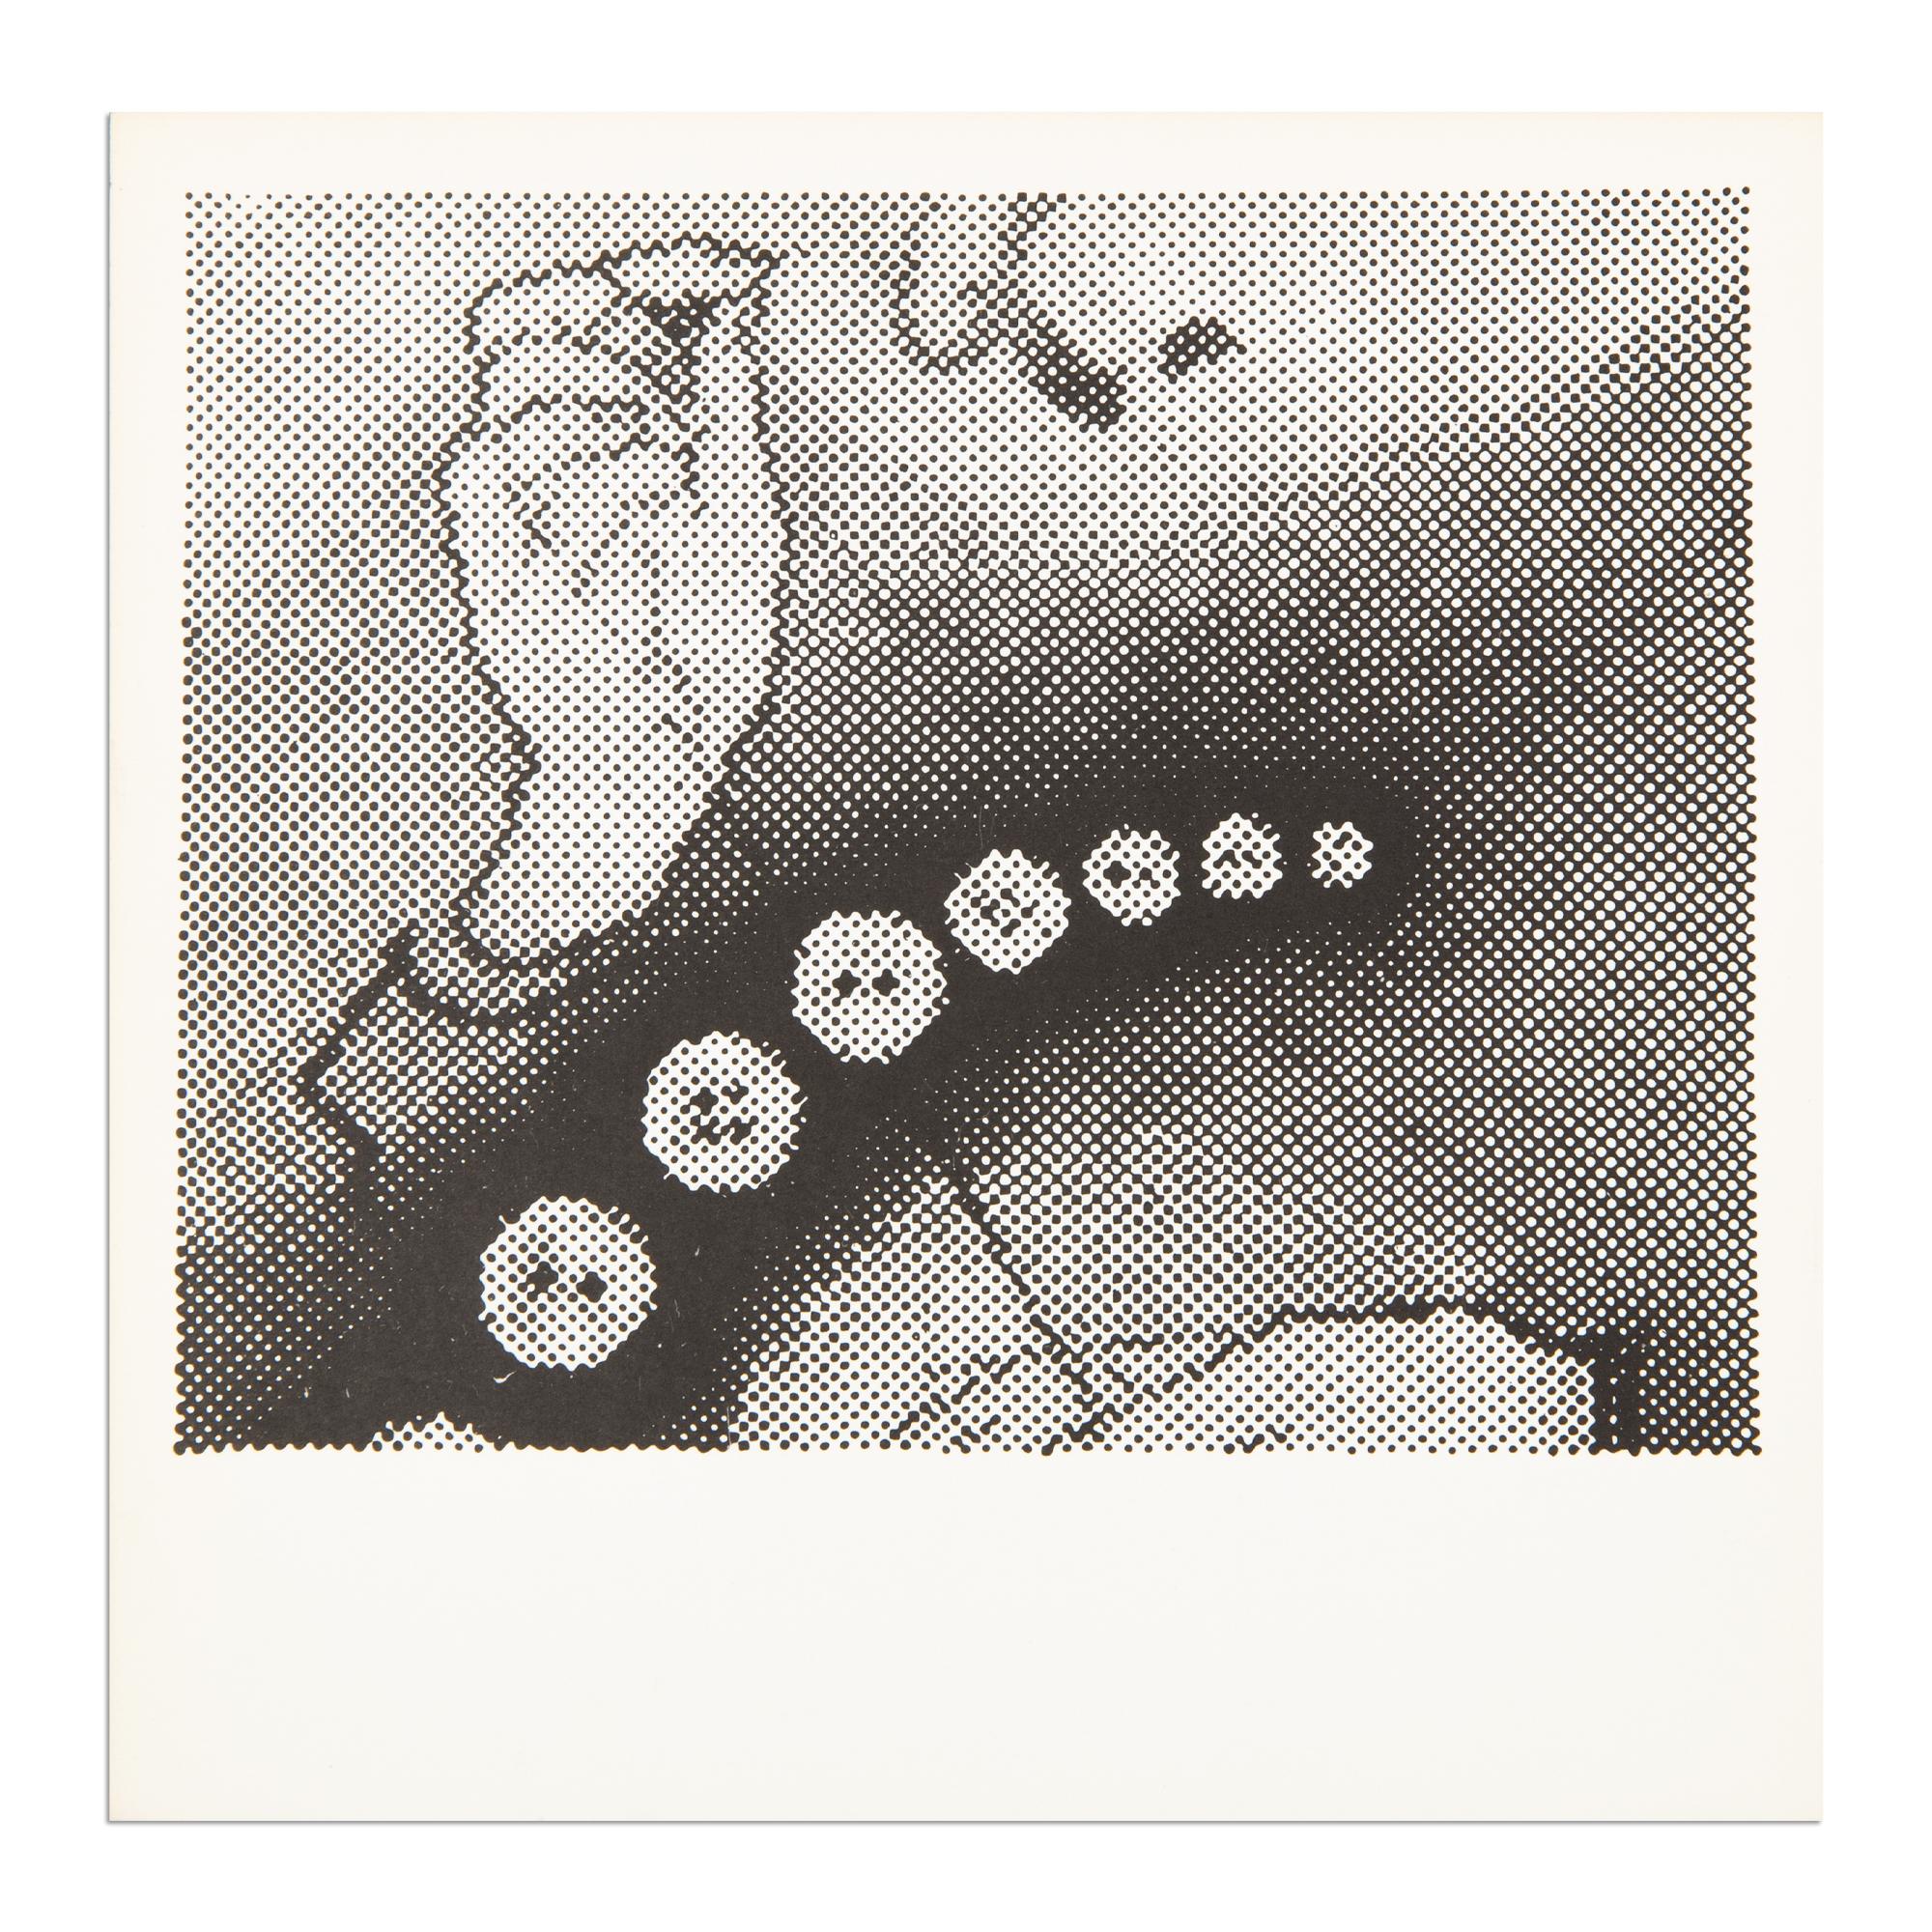 Sigmar Polke
Oelbild (Näherin), 1967
Support : Lithographie offset sur papier cartonné
Dimensions : 9 3/10 × 9 3/10 in  23.5 × 23.5 cm
Édition de 500 exemplaires : Non signé (tel que publié)
Condit : Excellent
